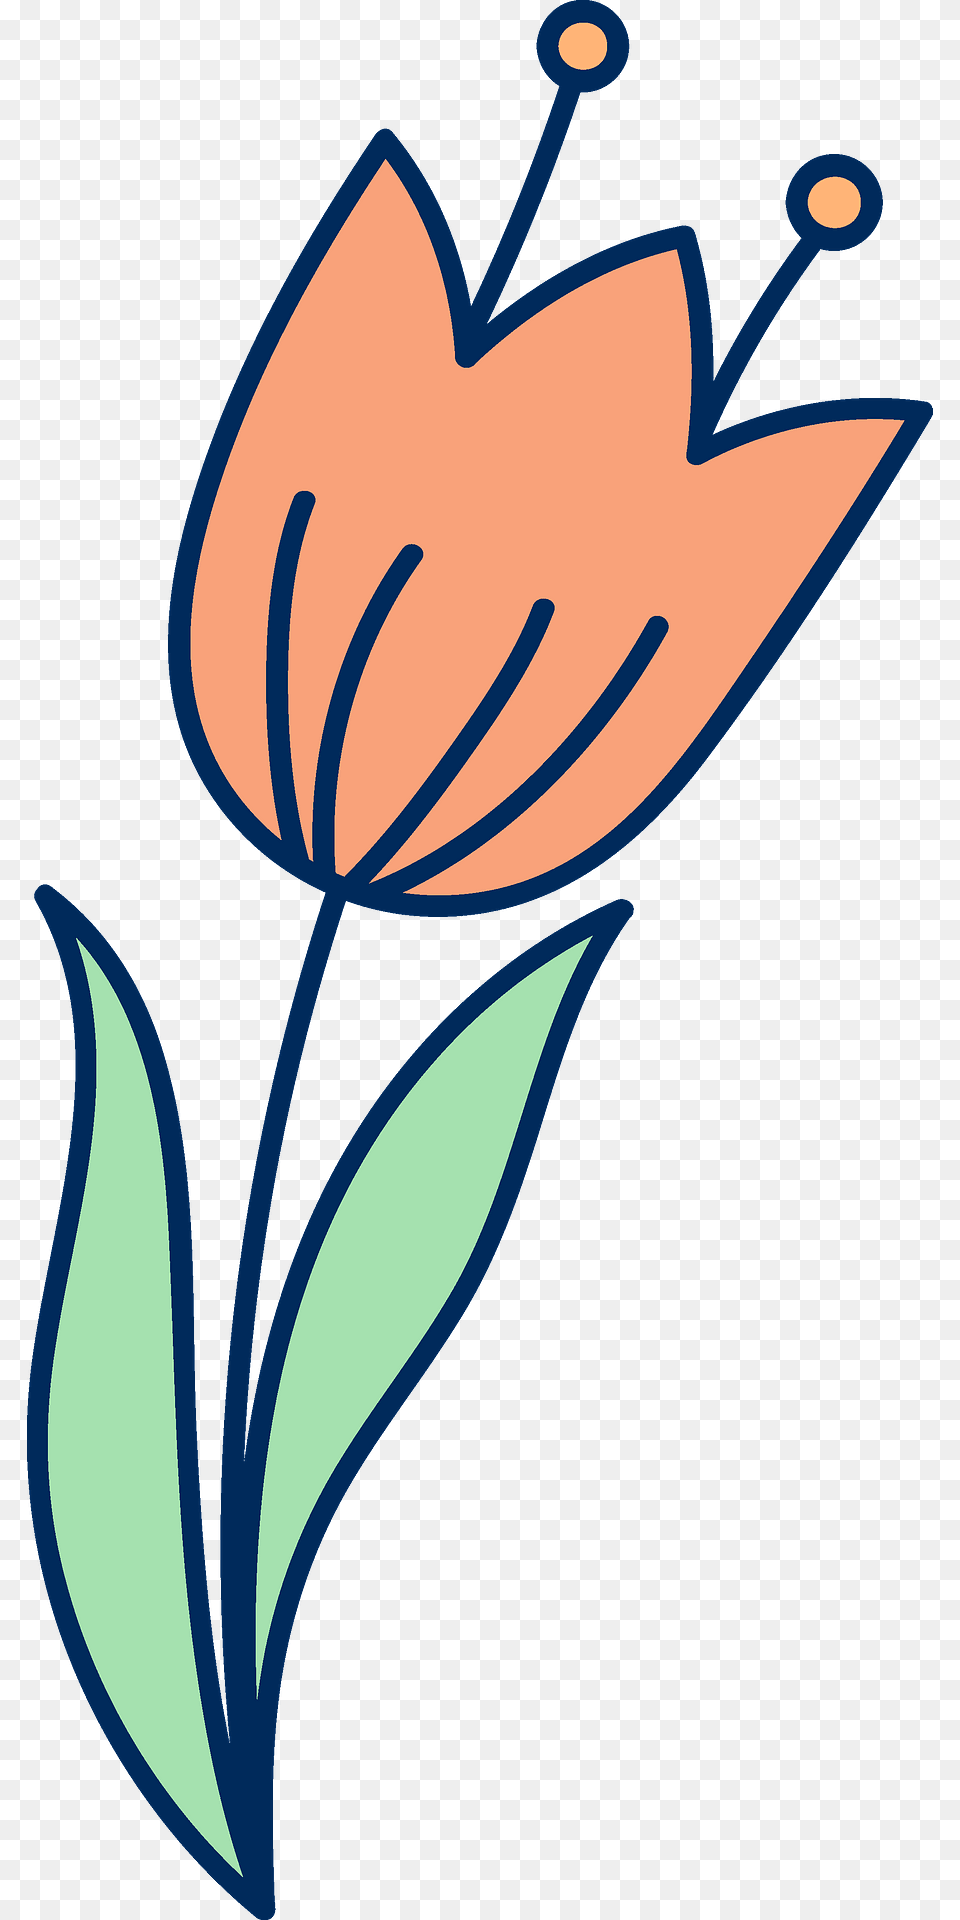 Easter Flower Clipart, Plant, Petal, Art, Floral Design Png Image